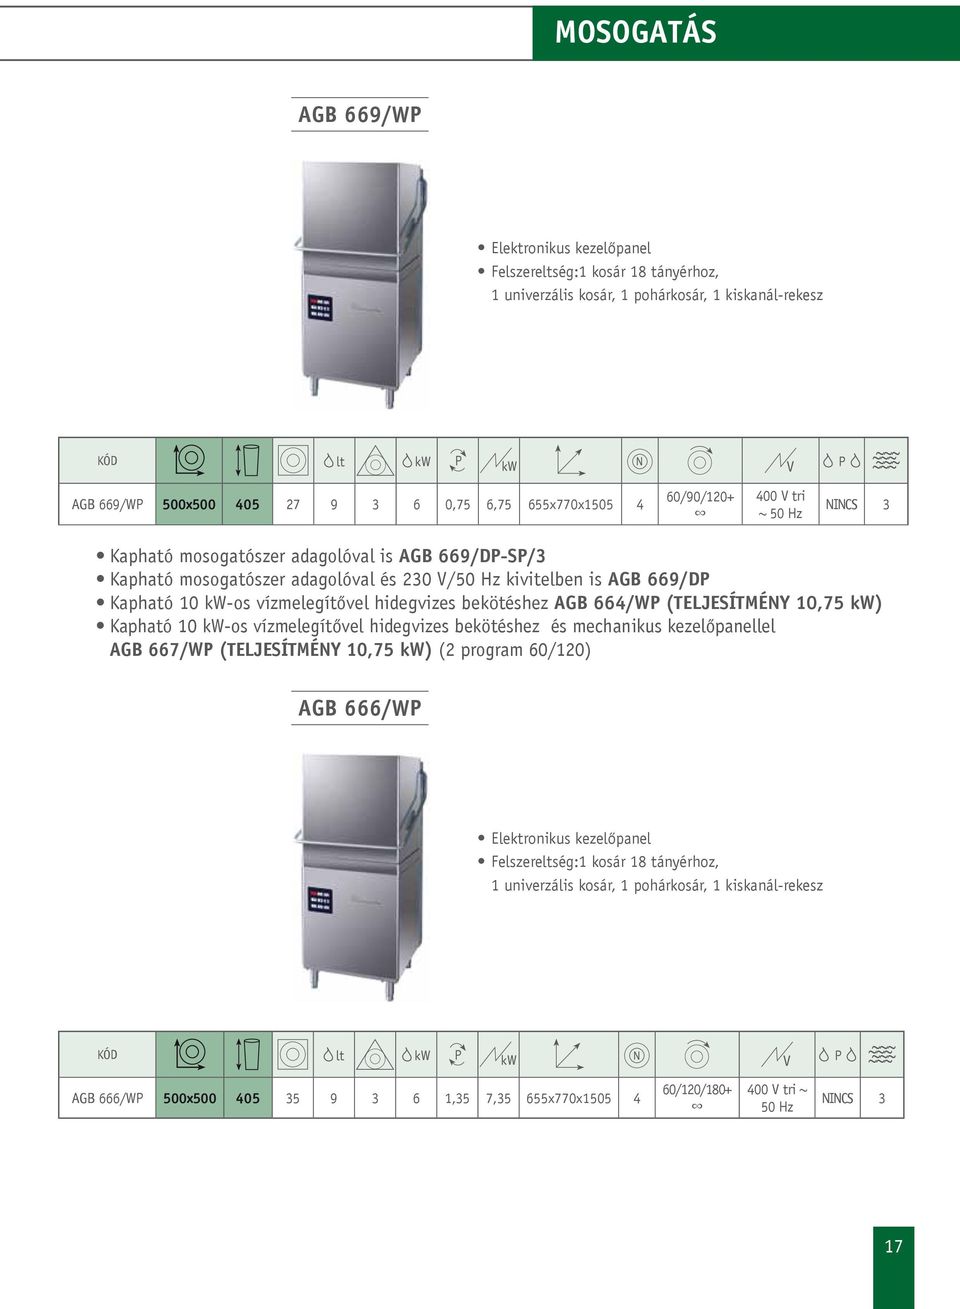 hidegvizes bekötéshez AGB 664/W (TELJESÍTMÉNY 10,75 kw) Kapható 10 kw-os vízmelegítővel hidegvizes bekötéshez és mechanikus kezelőpanellel AGB 667/W (TELJESÍTMÉNY 10,75 kw) (2 program 60/120) AGB